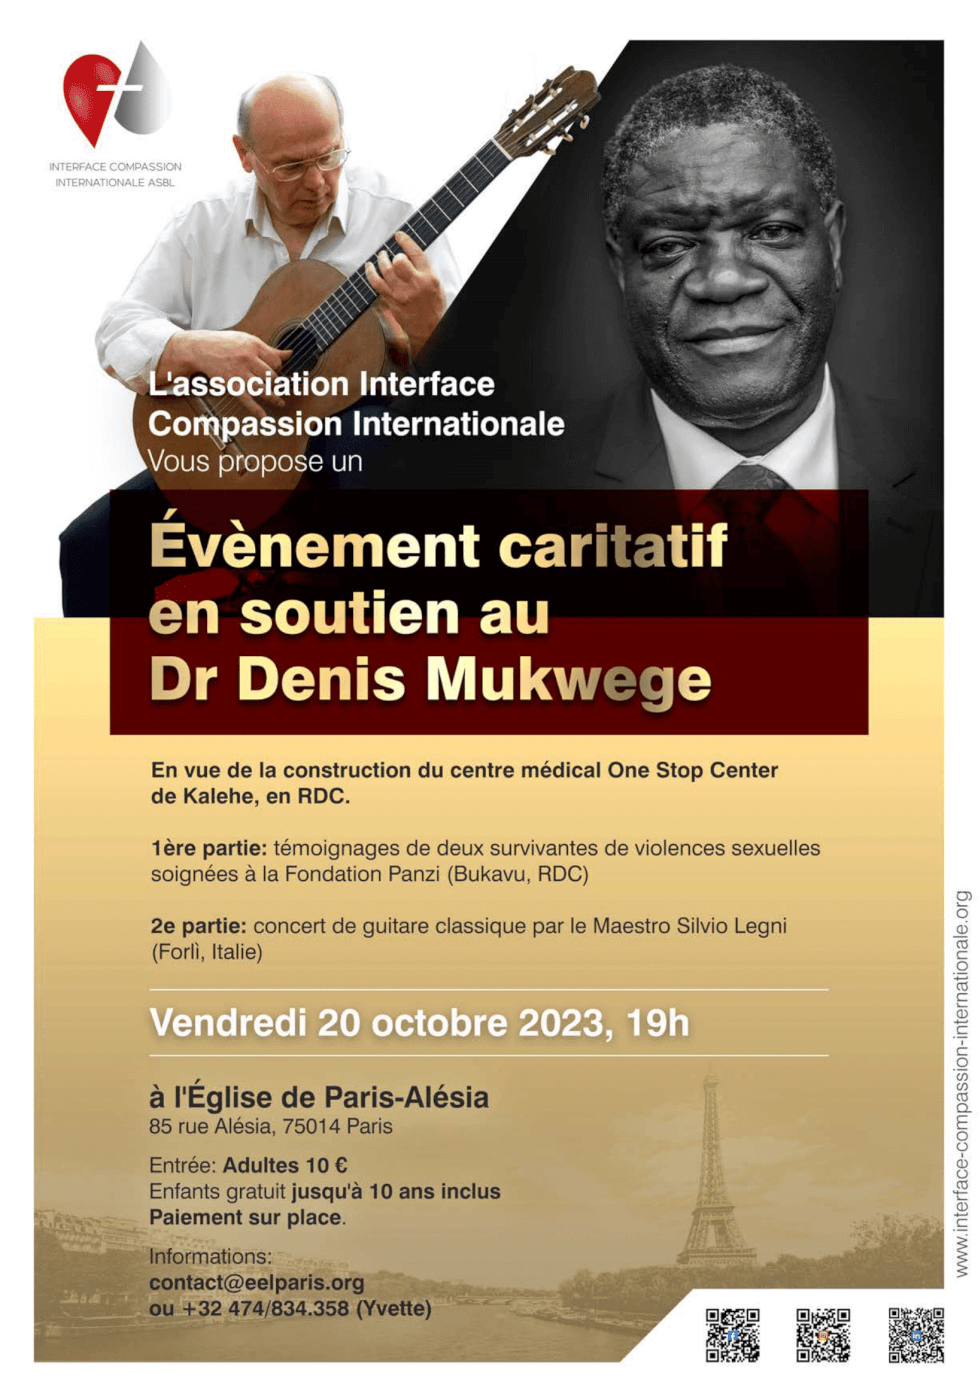 Evénement caritatif en soutien au Dr Denis Mukwege